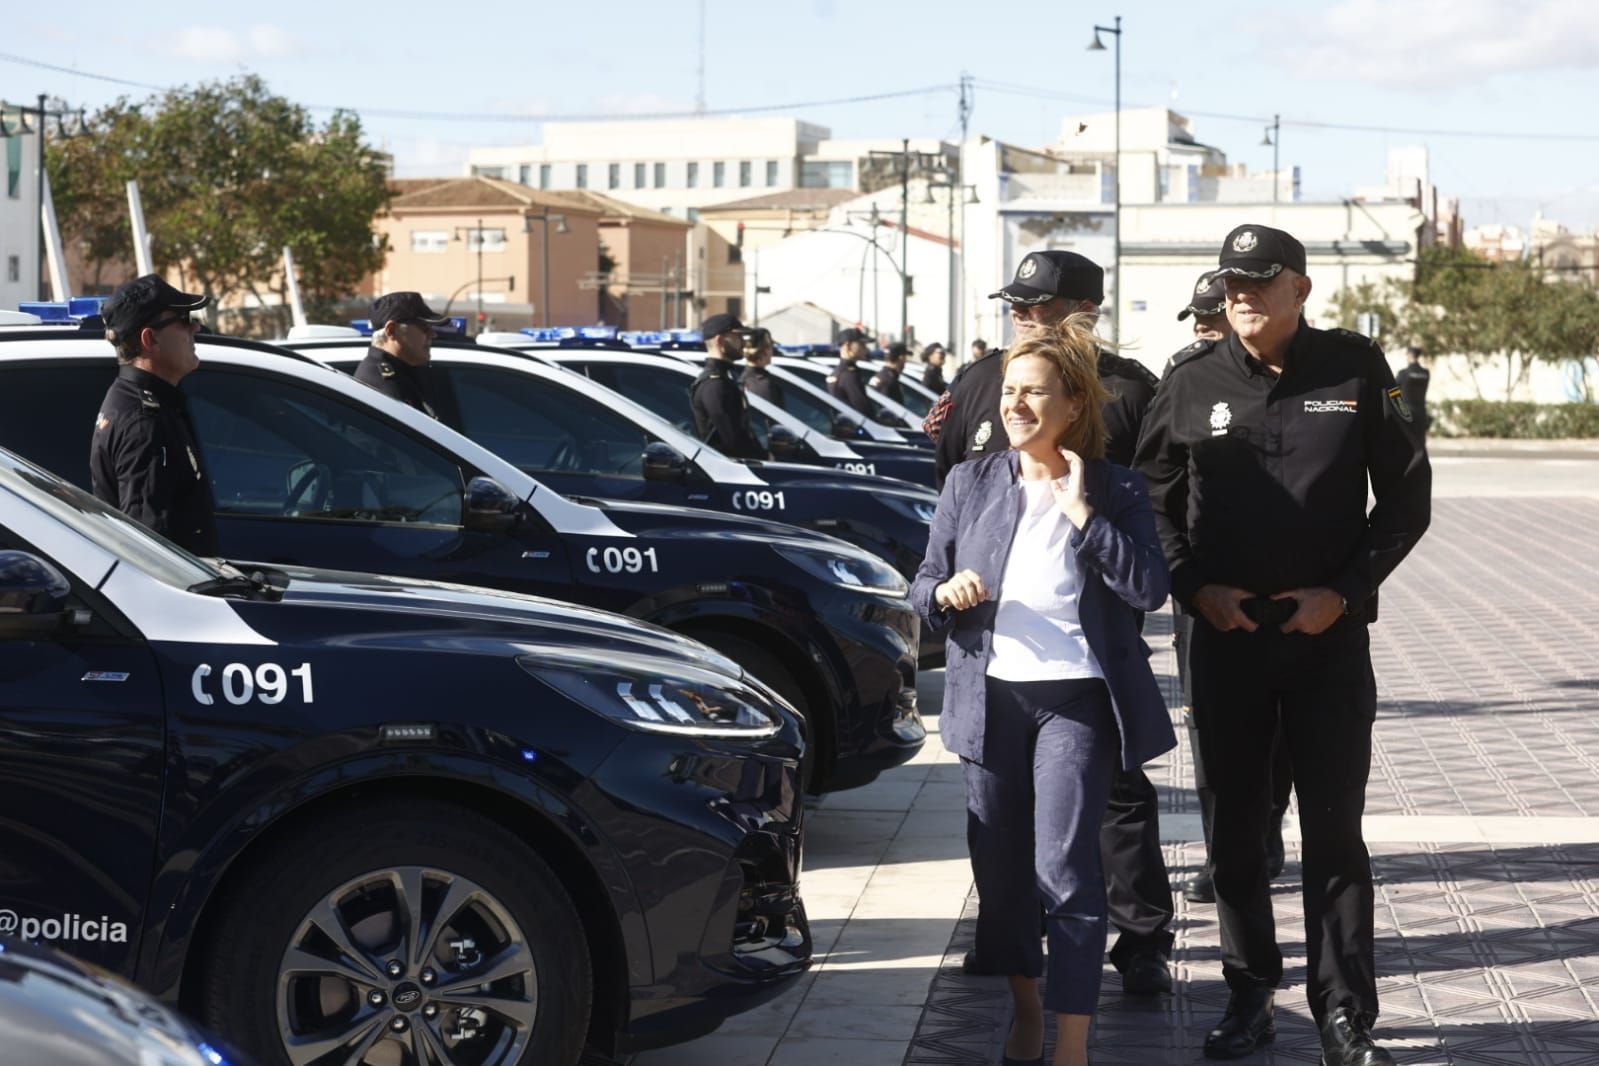 La Policía Nacional estrena coche, 65 unidades de este PHEV fabricado en  España